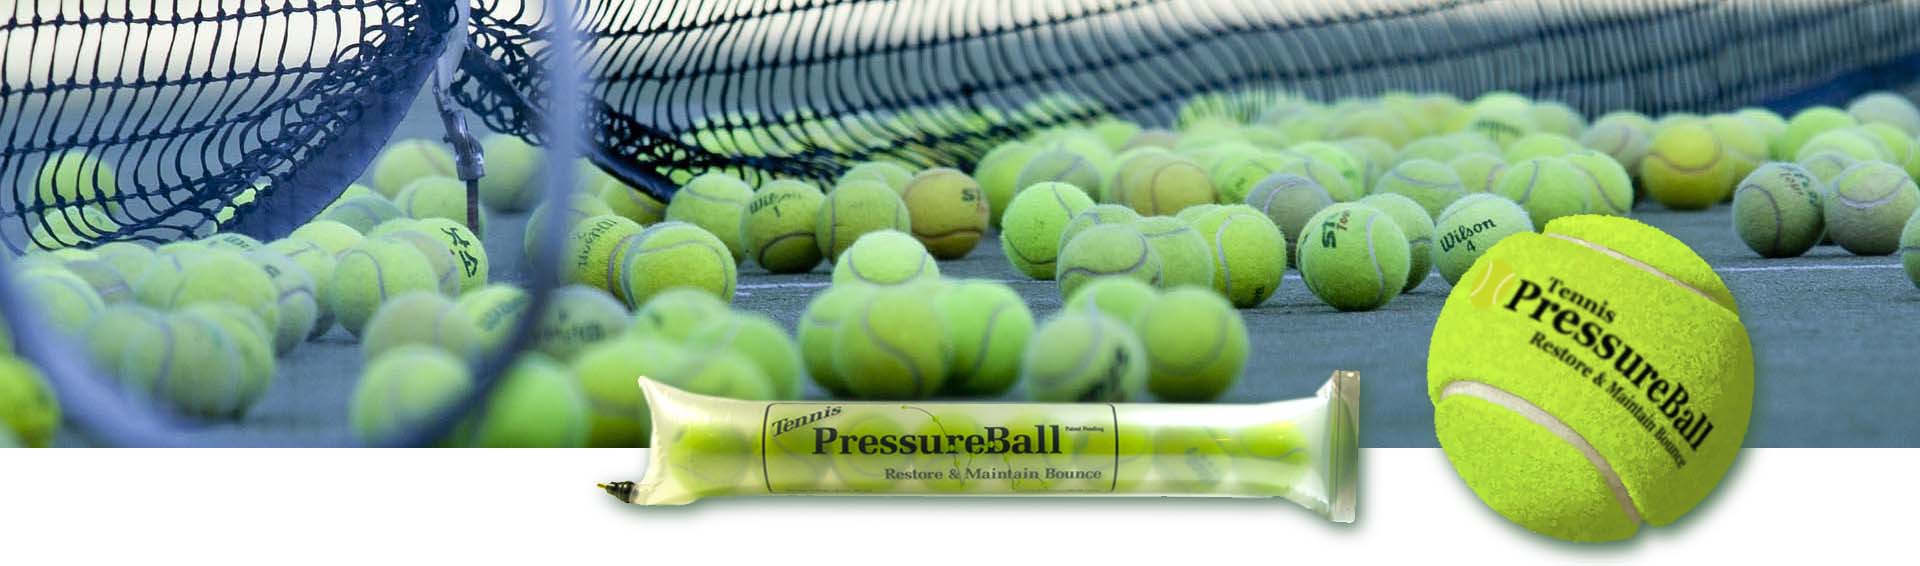 Recuperador de presion para pelotas de tenis o padel